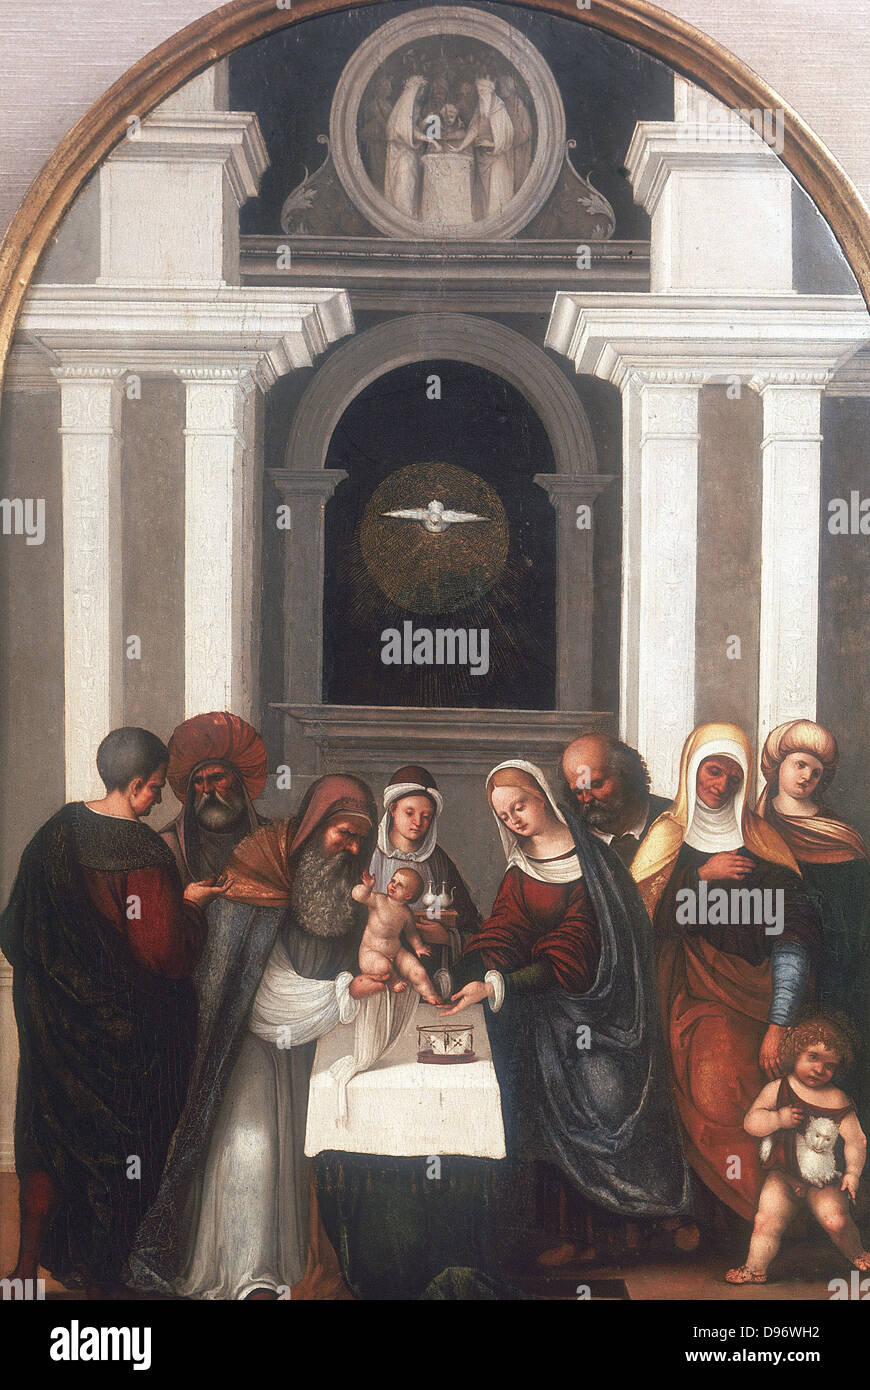 La circoncision". L'enfant Jésus présenté au Temple pour la cérémonie de circoncision. La colombe de l'Esprit Saint plane sur le groupe familial. L'enfant Jean le Baptiste se tient à l'avant droit. Ludovico Mazzolino (1480-1528) peintre italien. Banque D'Images